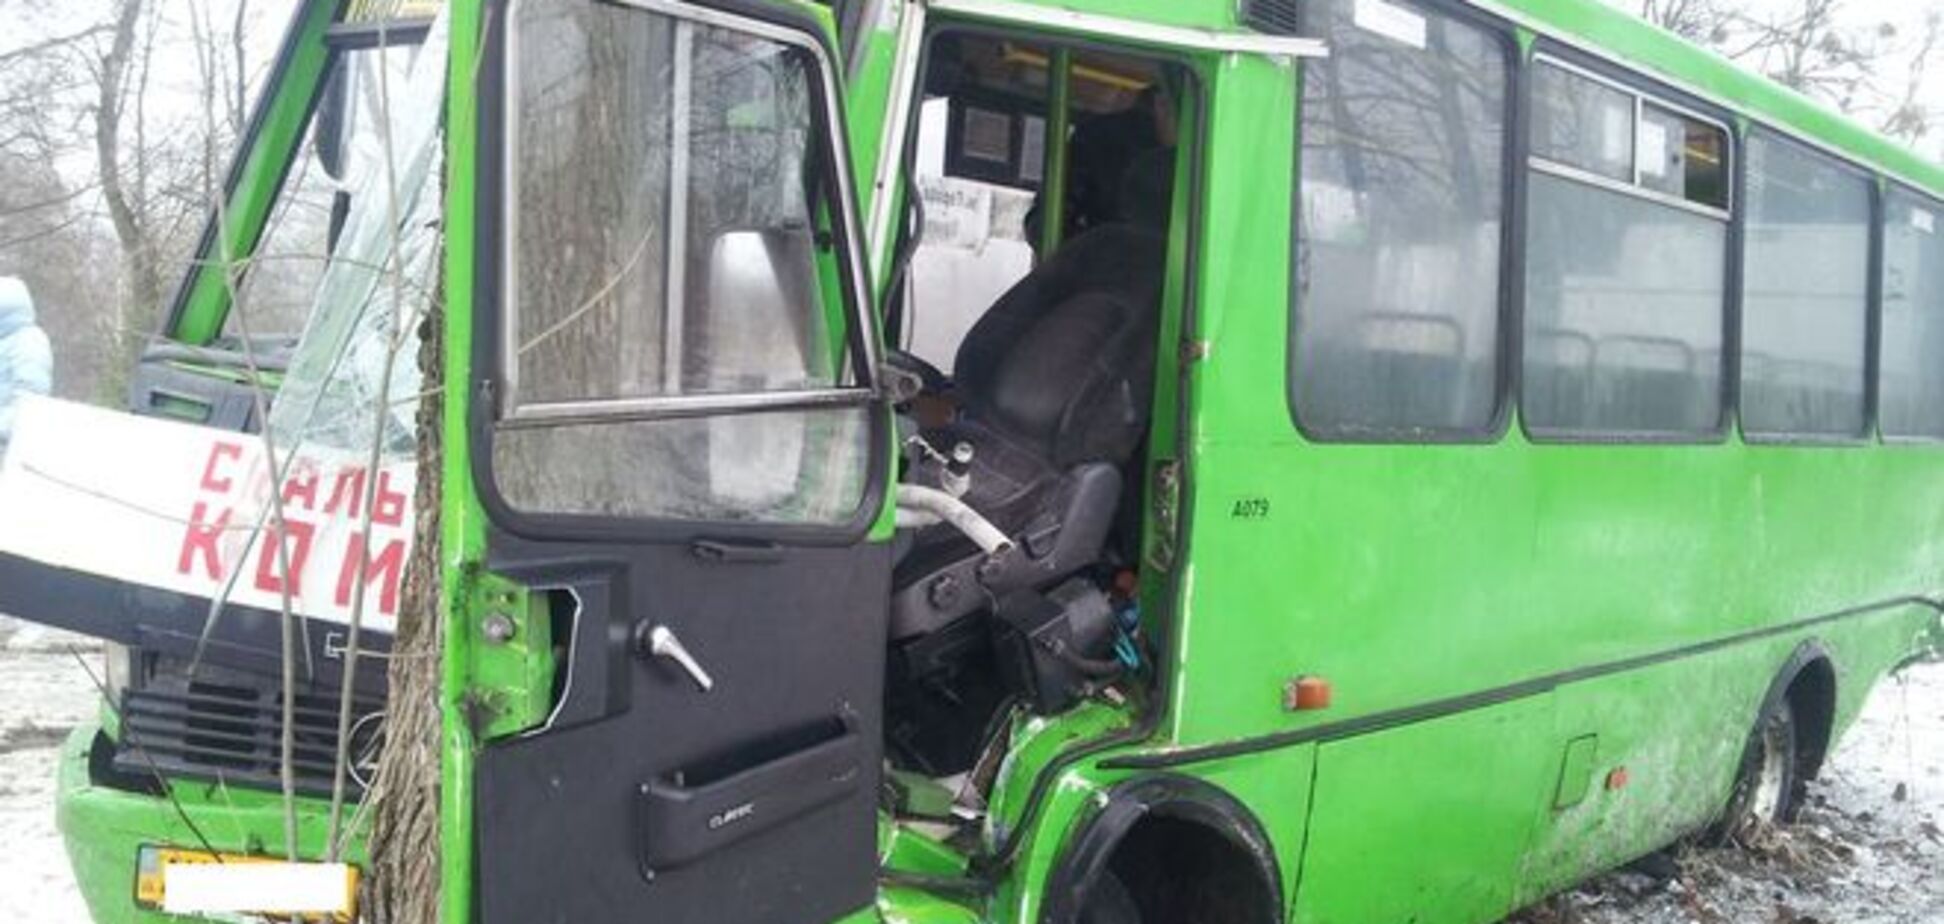 Під Харковом автобус потрапив у ДТП, 8 осіб постраждали: опубліковано фото